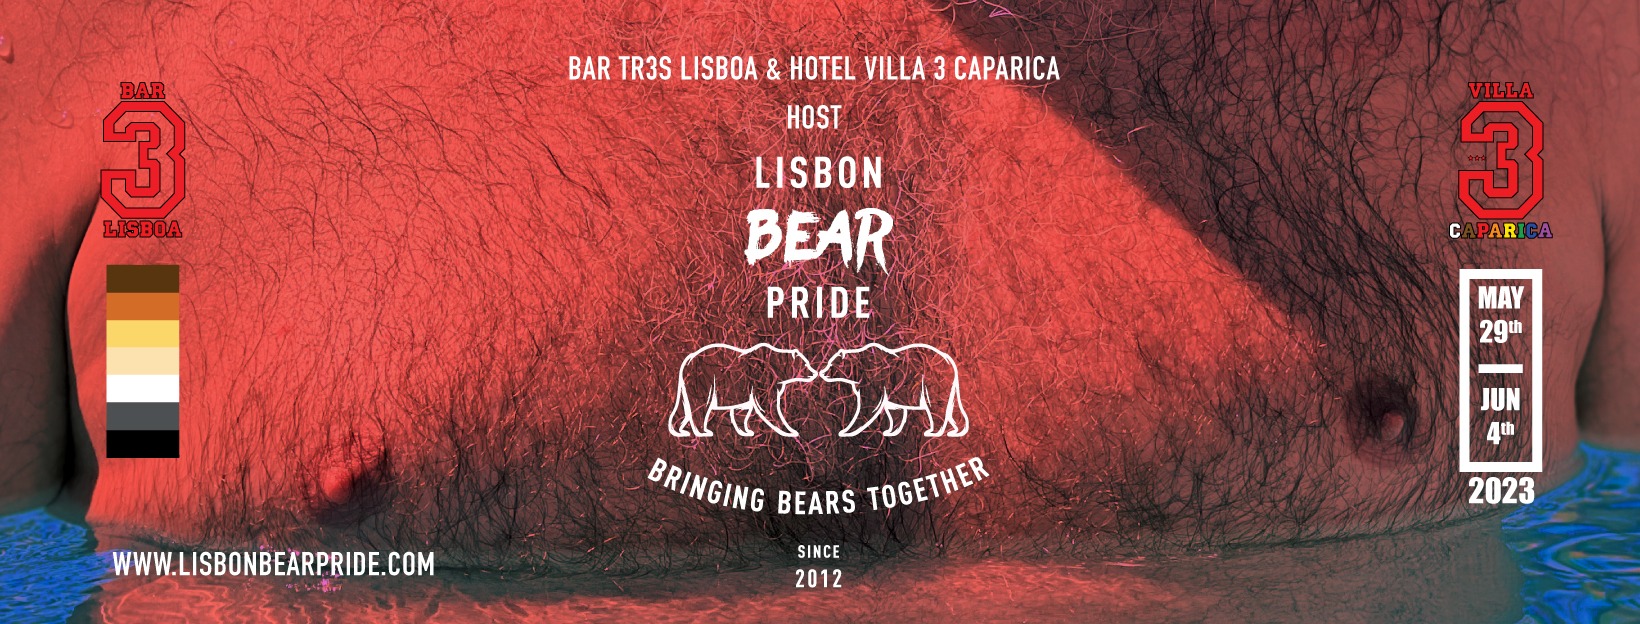 ליסבון Bear הגאווה 2024